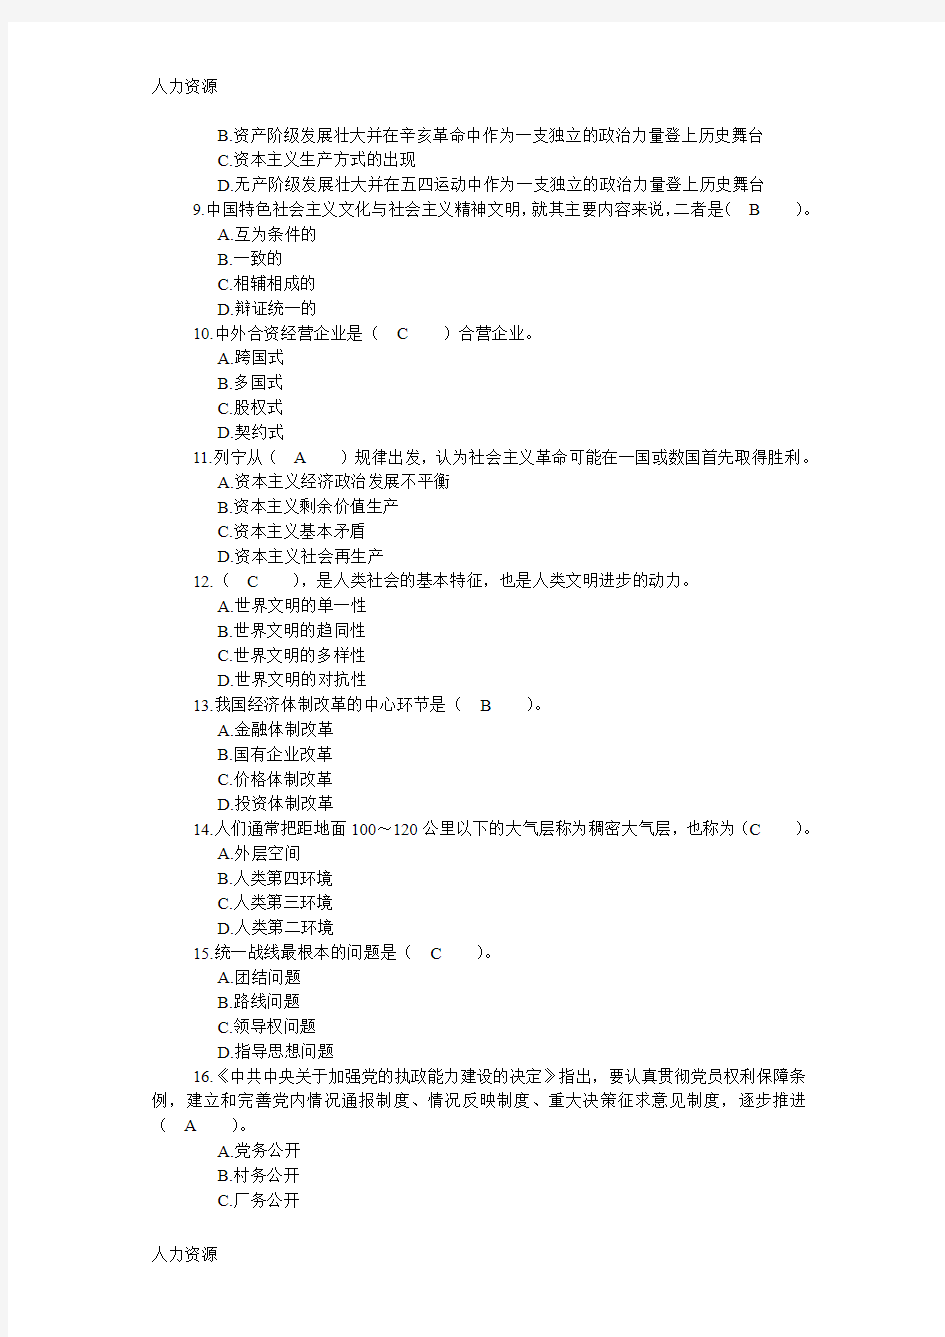 【人力资源】四川省领导干部选拔考试真题十六资料